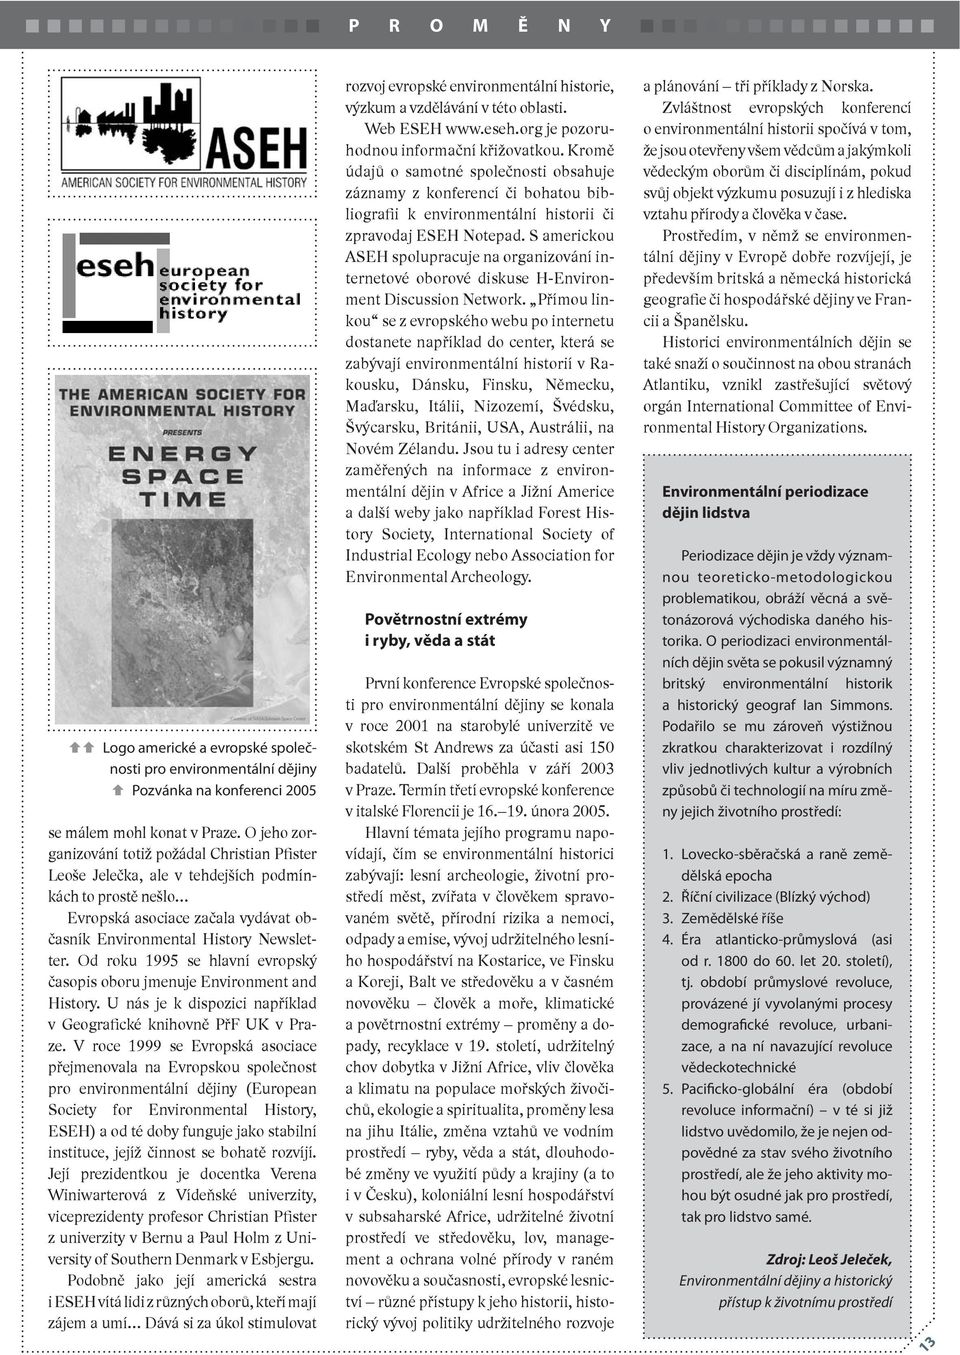 Od roku 1995 se hlavní evropský časopis oboru jmenuje Environment and History. U nás je k dispozici například v Geografické knihovně PřF UK v Praze.